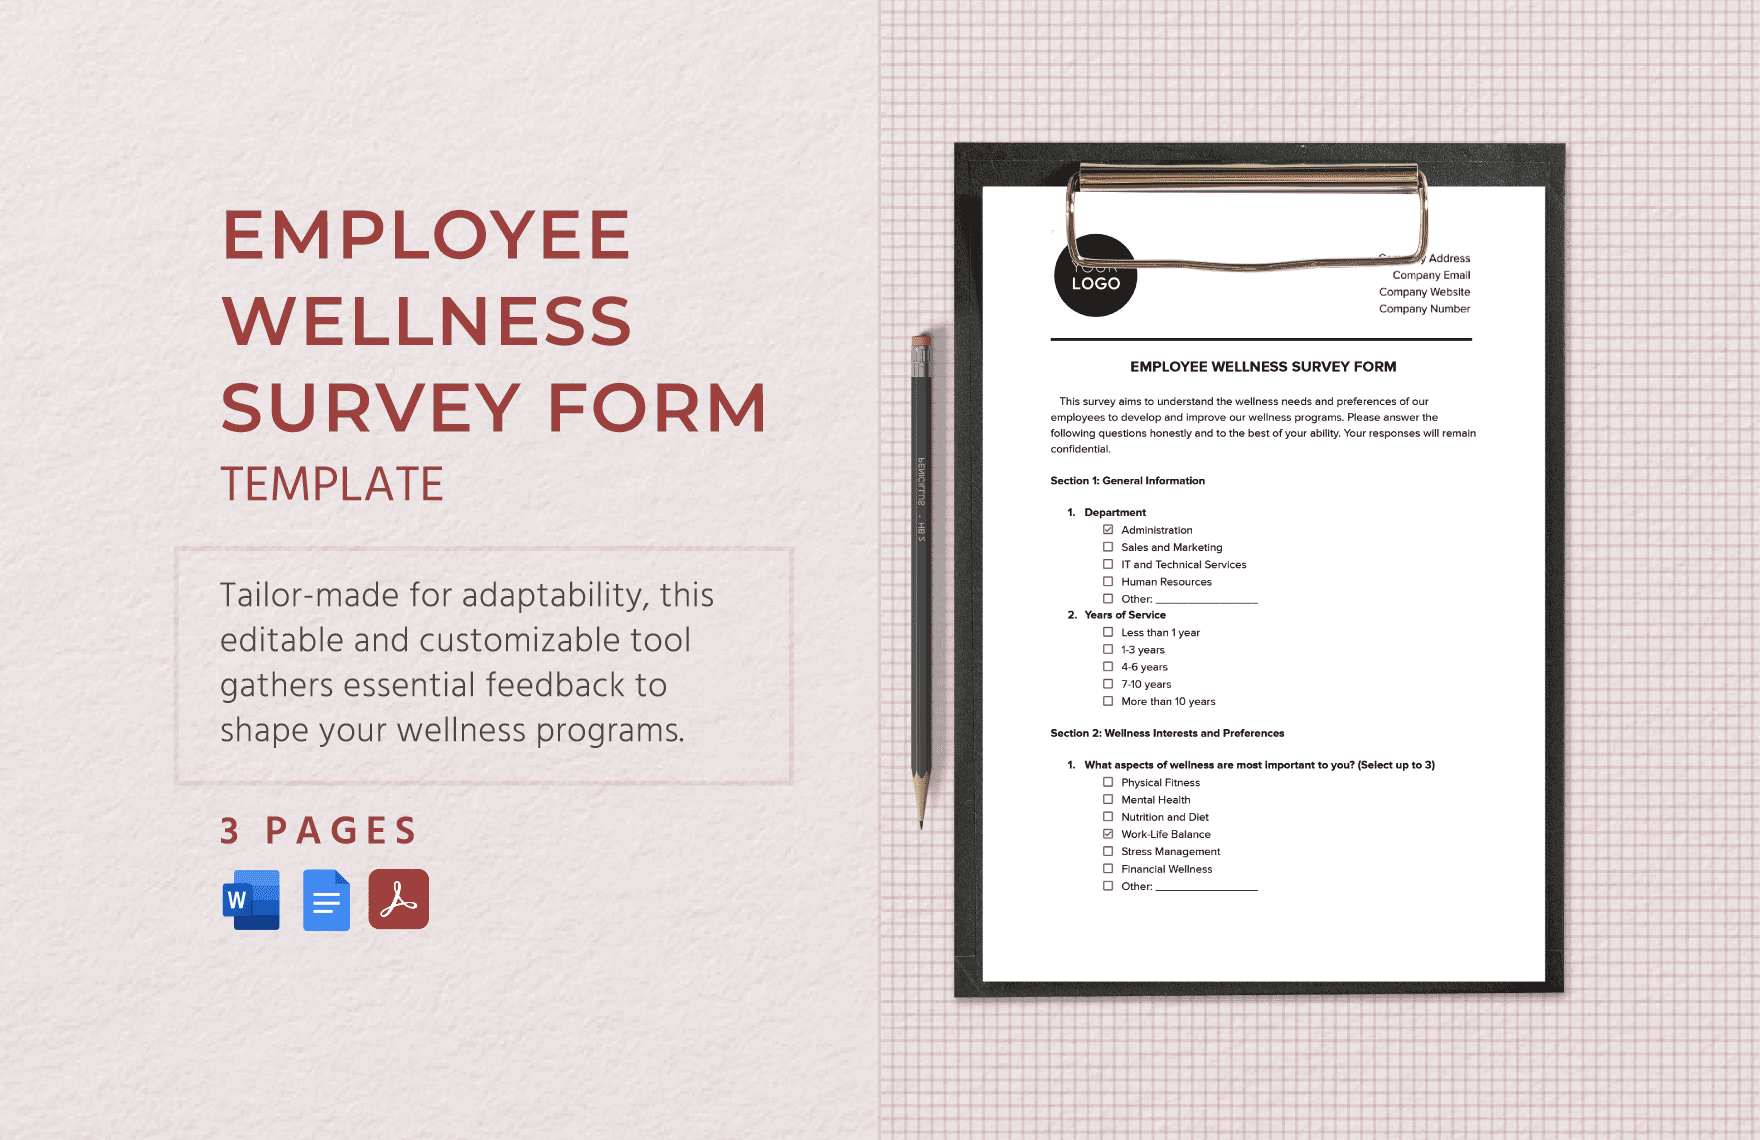 Employee Wellness Survey Form Template